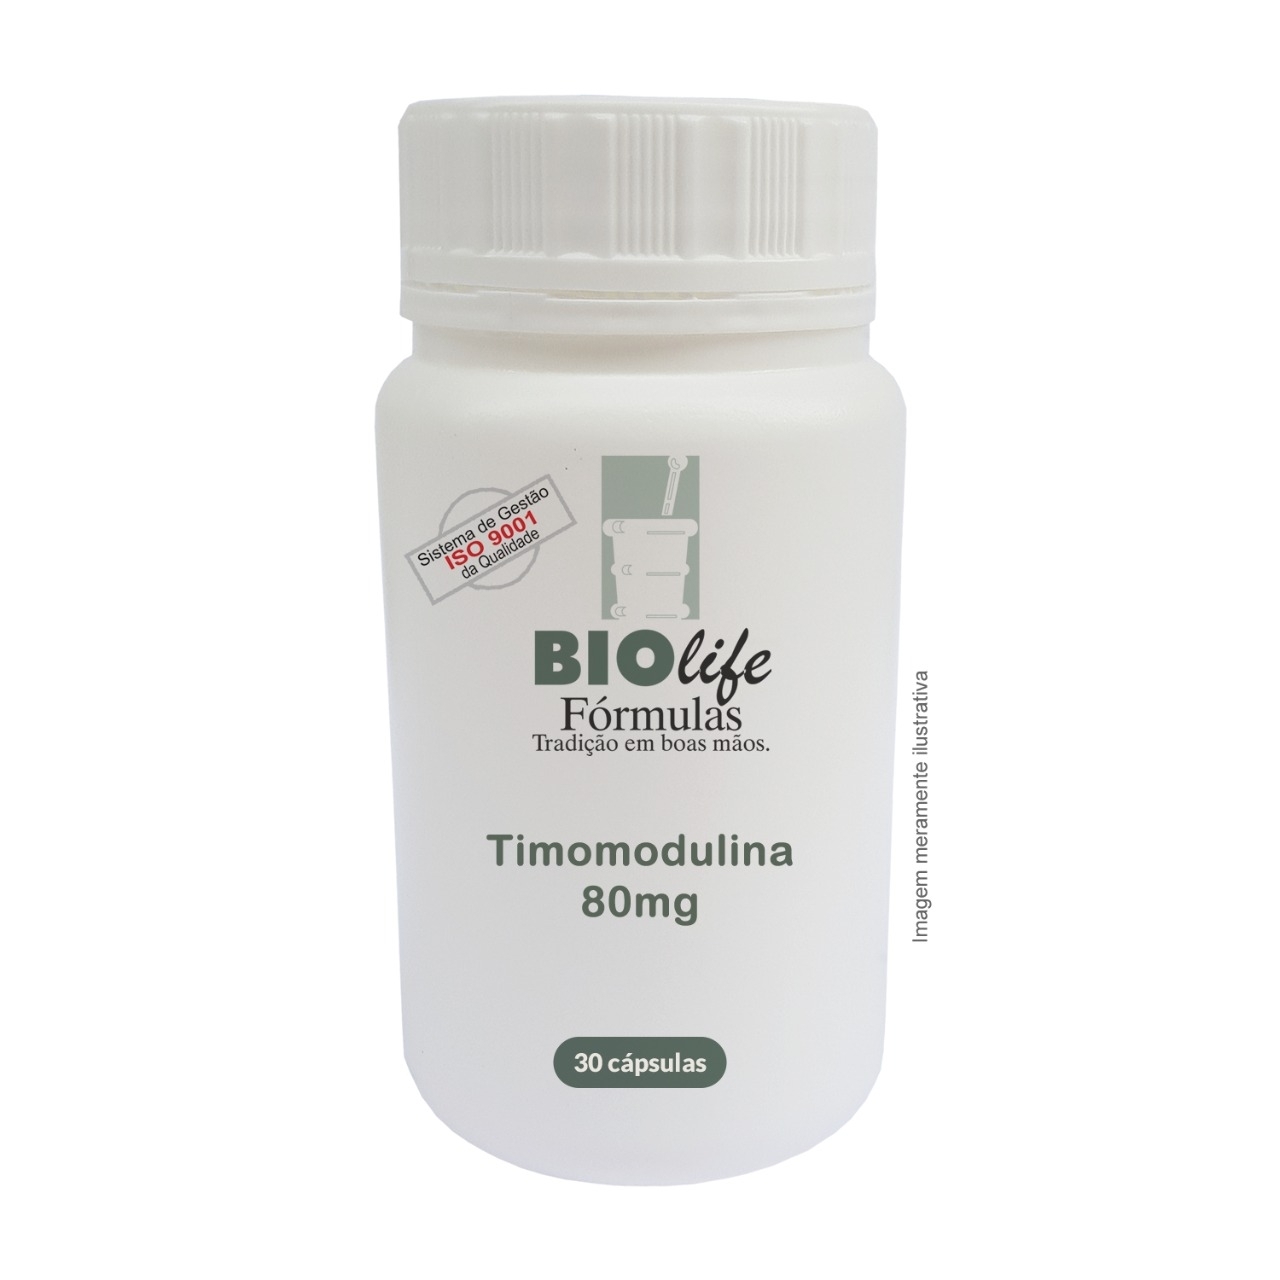 TIMOMODULINA 80MG - 30 caps - Reforço para Imunidade! - BioLife